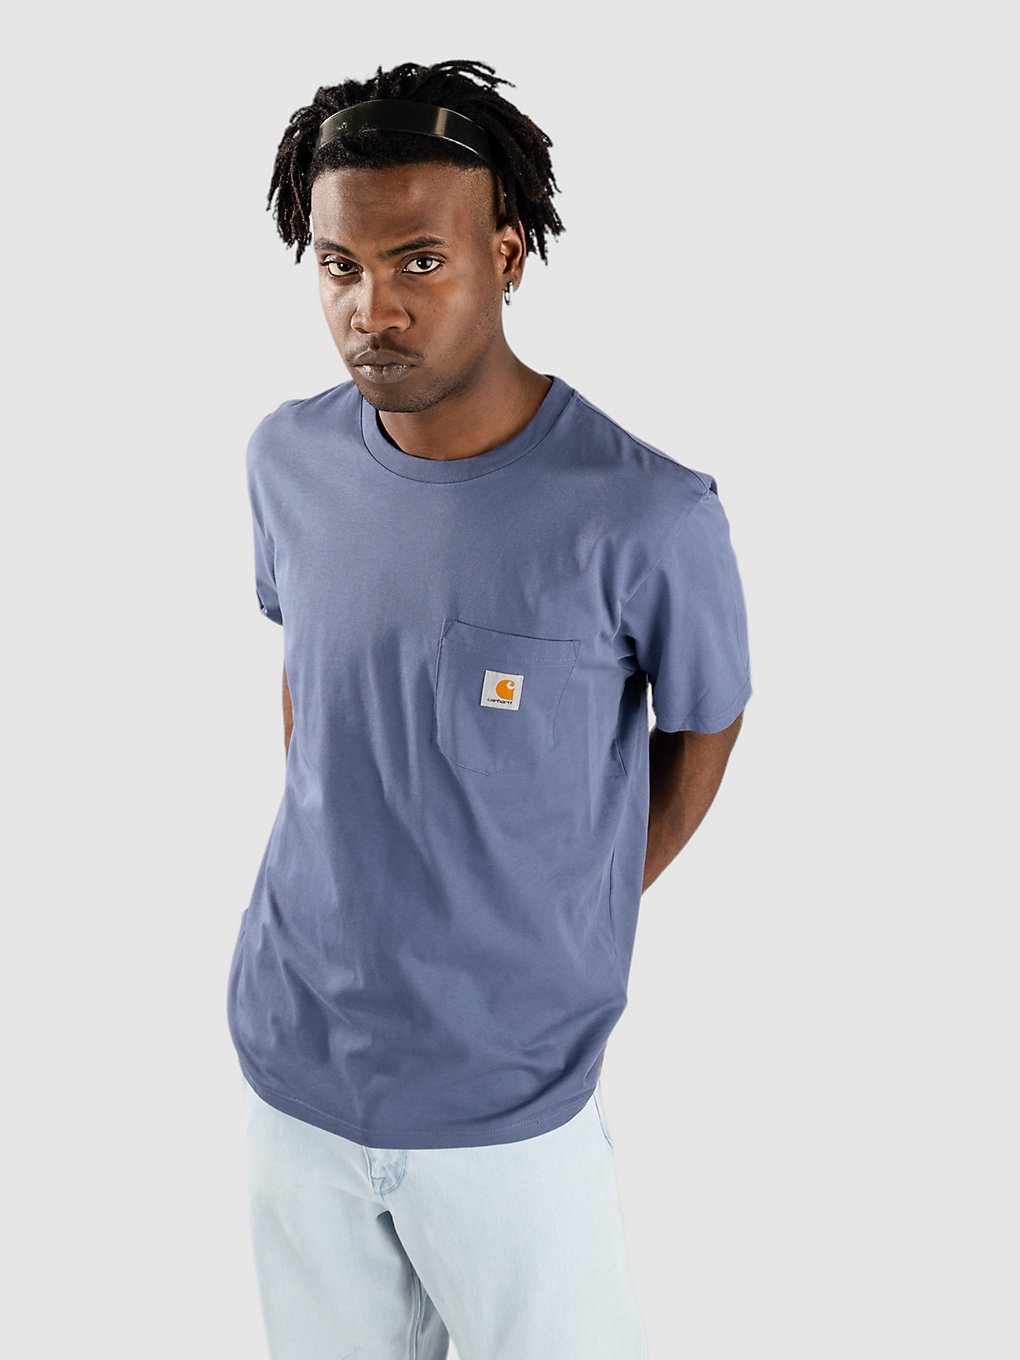 Carhartt WIP Pocket T-Shirt hudson blue kaufen